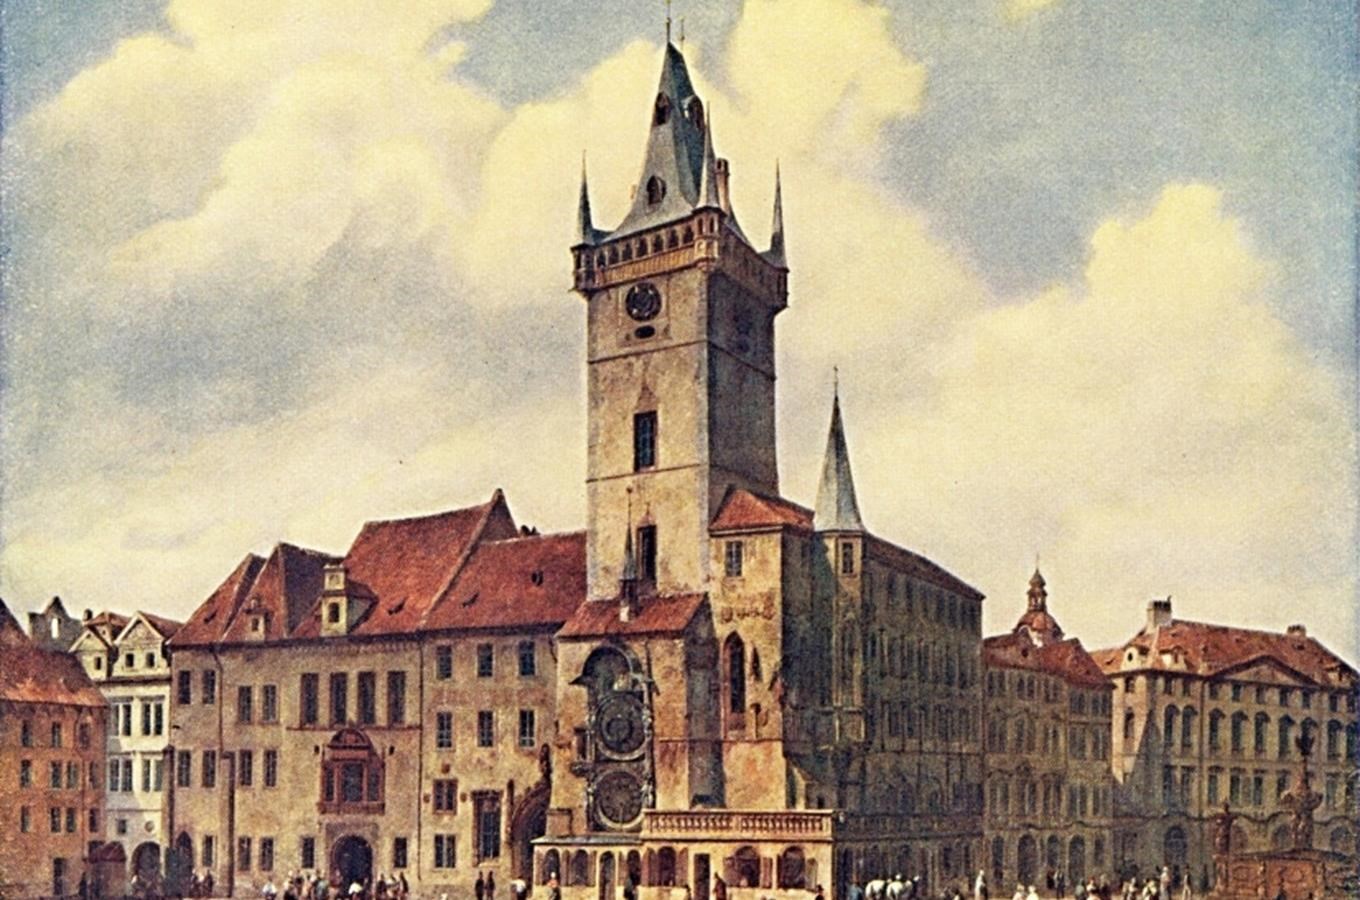 Osudy nejstarší pražské radnice vám představí nová stálá expozice Staletími Staroměstské radnice